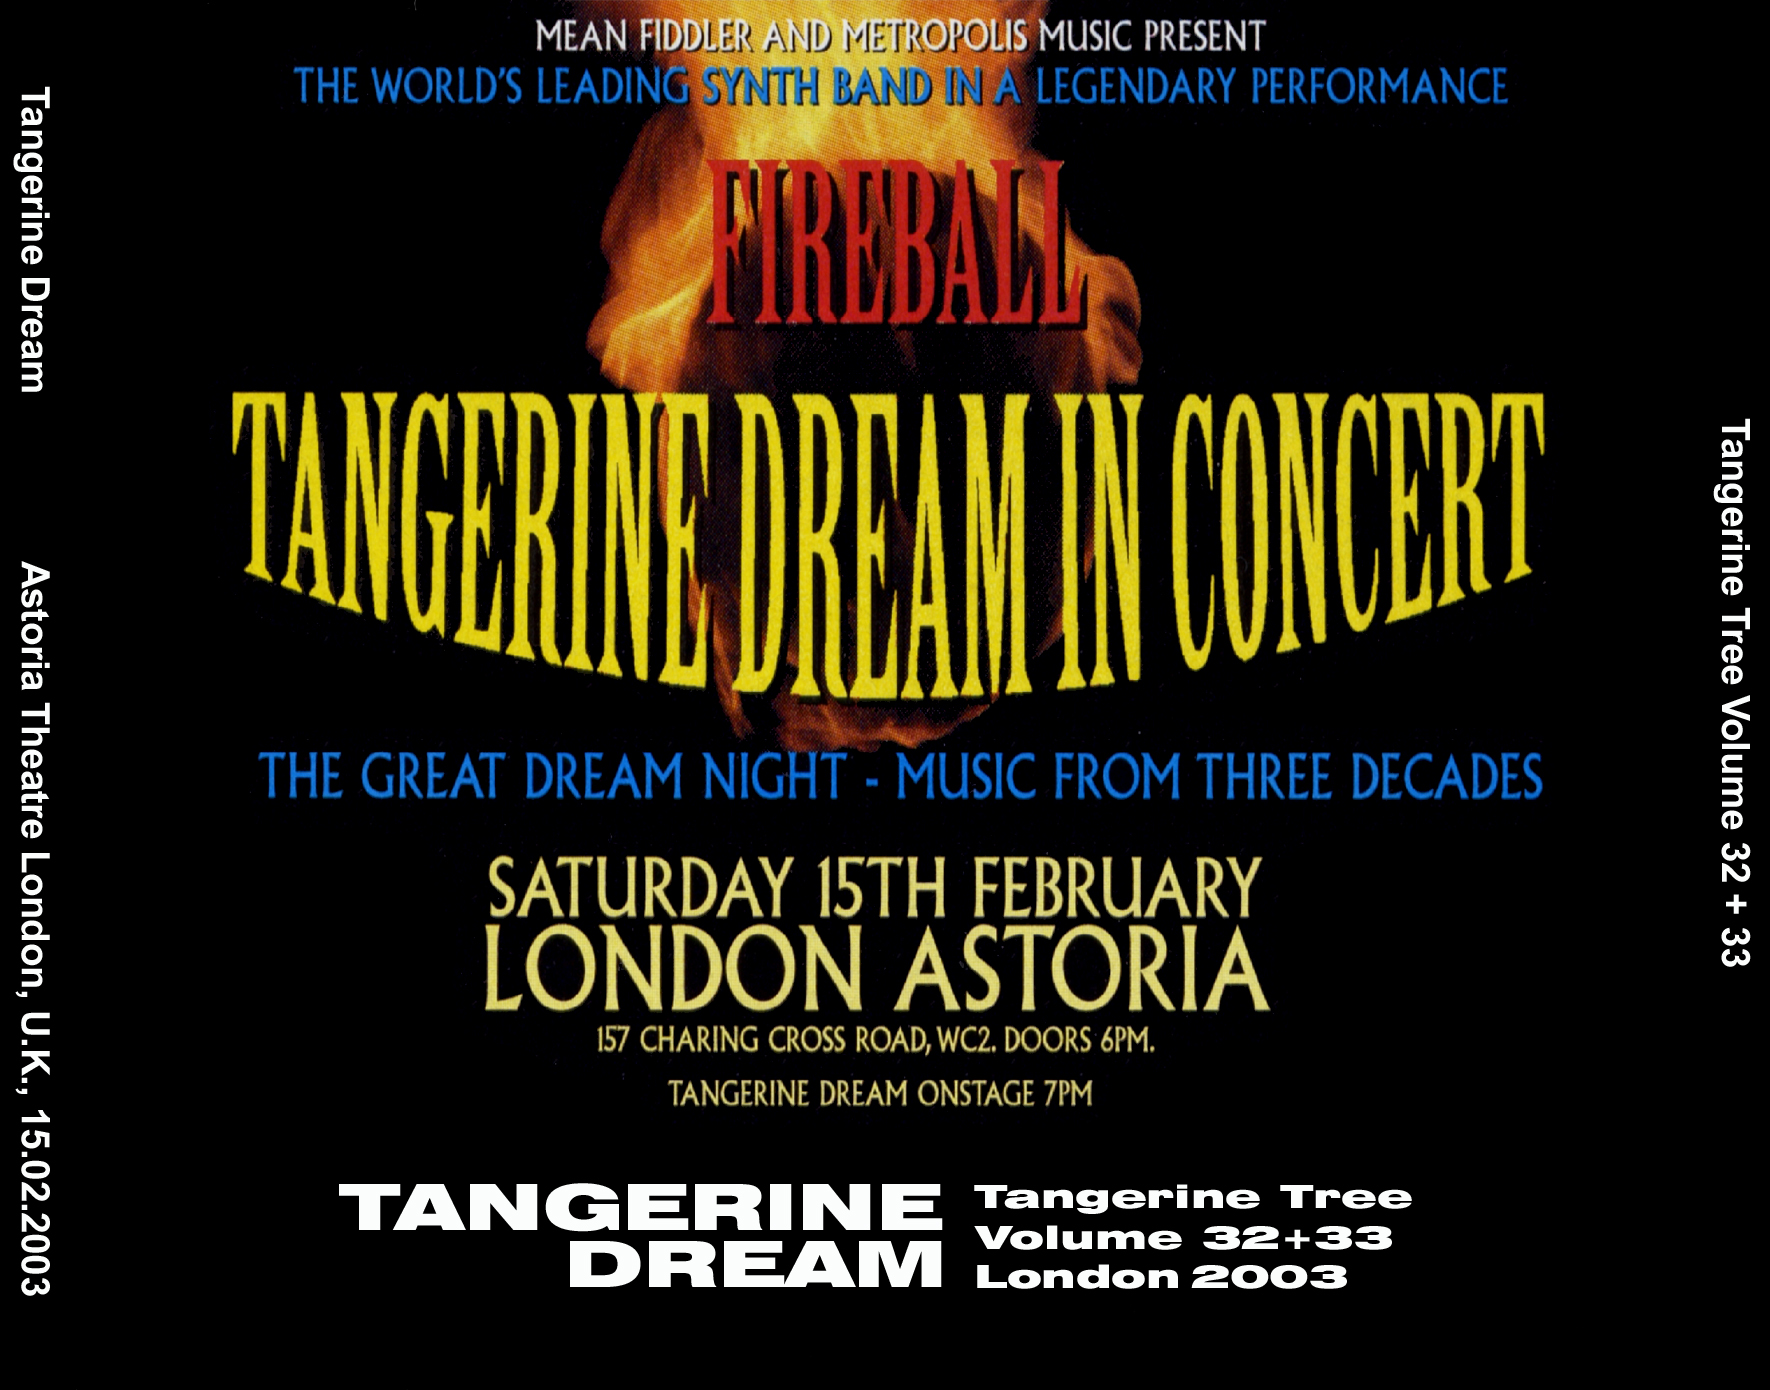 TangerineDream2003-02-15AstoriaTheatreLondonUK (2).jpg